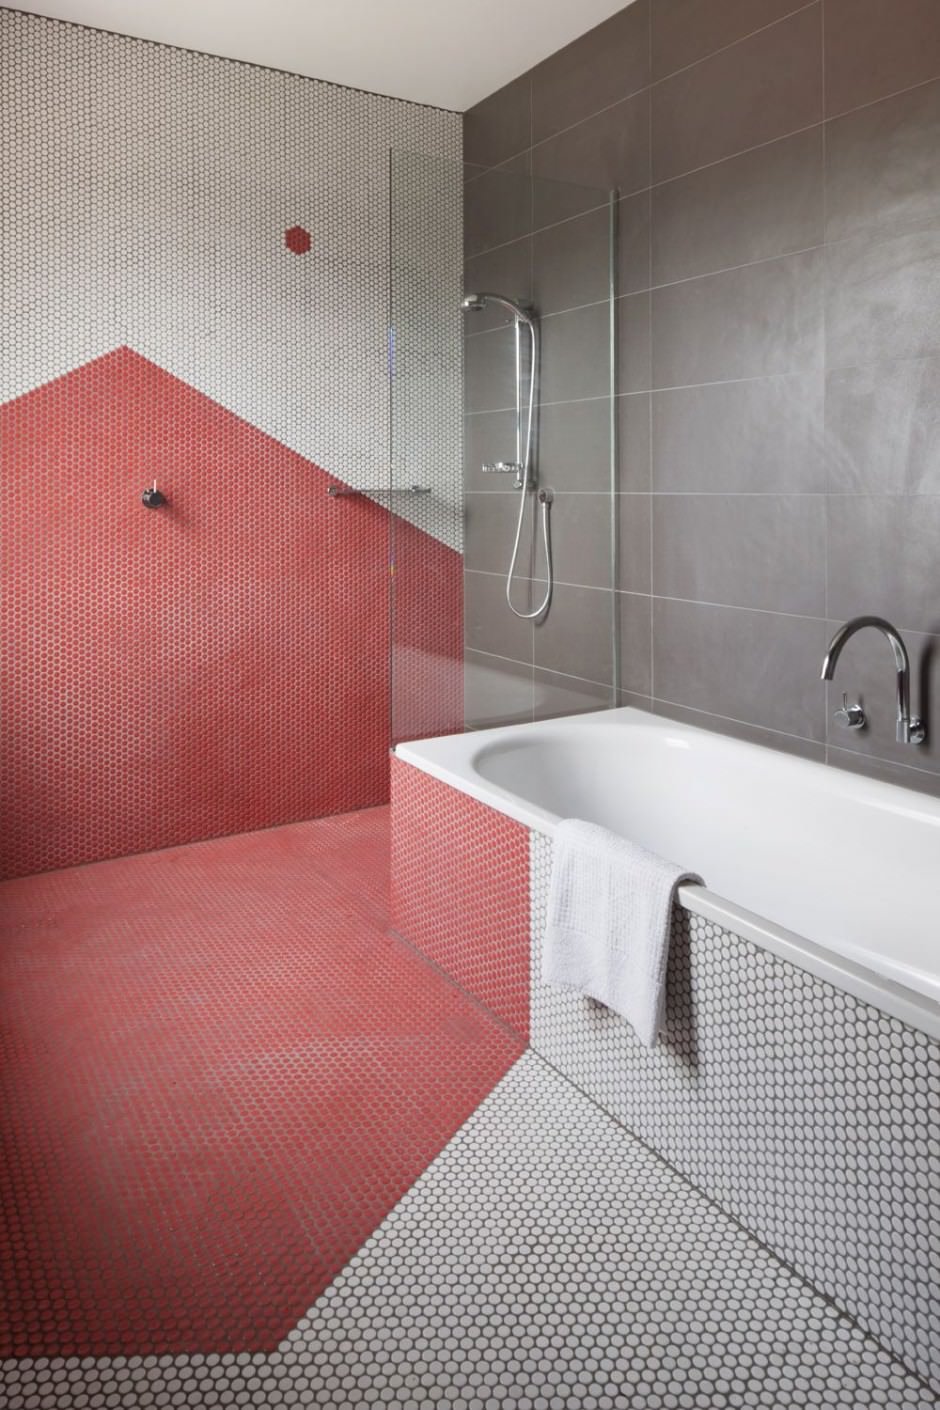 Bellissimo design di bagno minimal moderno con il rivestimento realizzato in mosaico esagonale - colori rosso e bianco